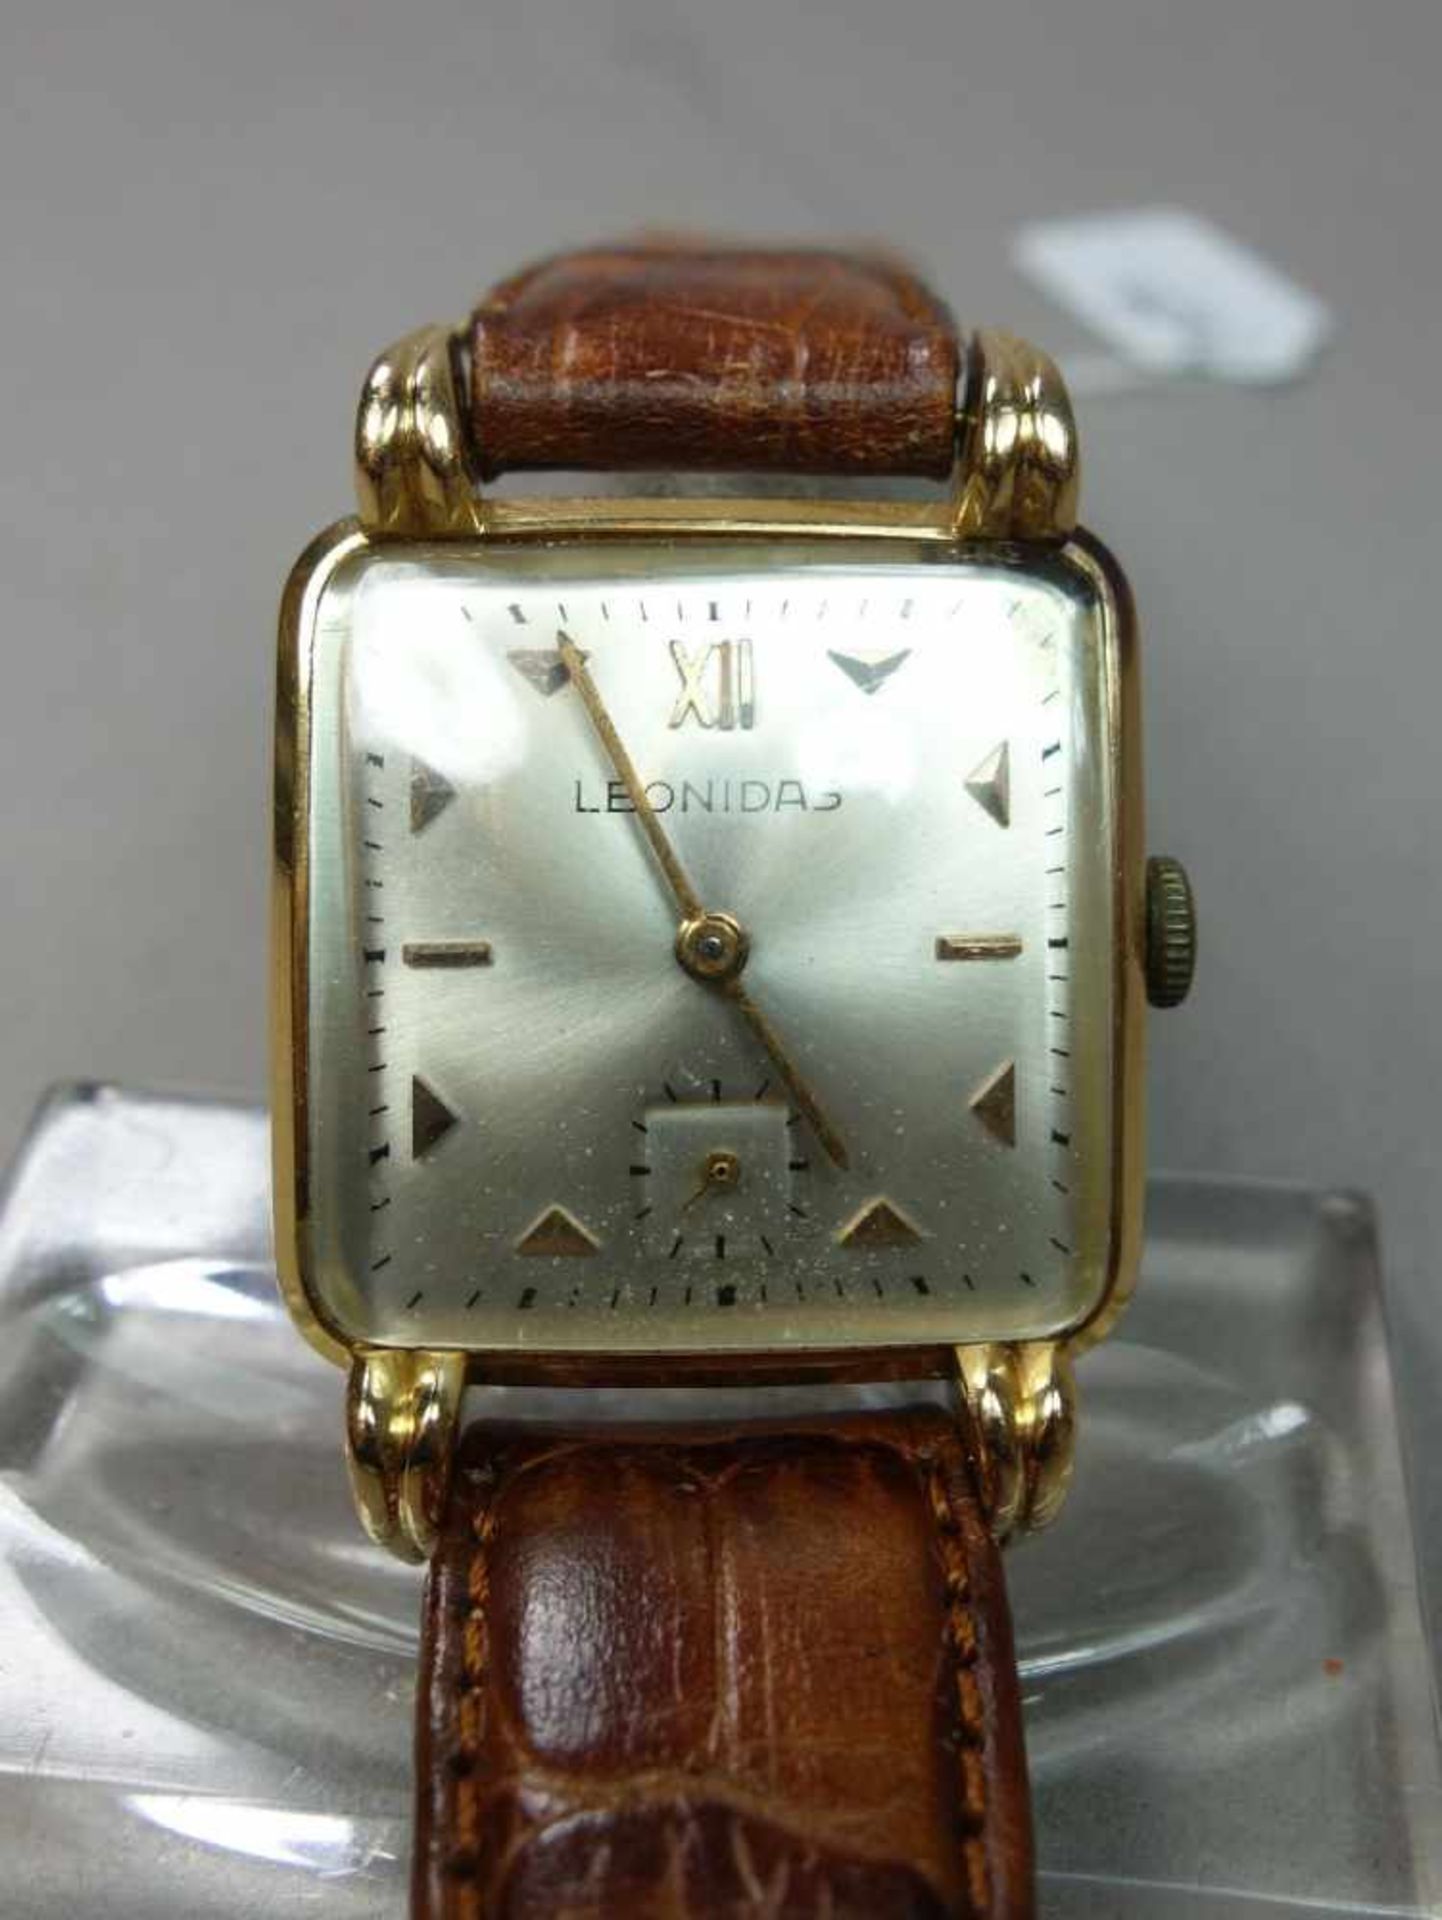 ART DÉCO ARMBANDUHR / wristwatch, Handaufzug, Manufaktur Leonidas Watch Factory / Schweiz. Eckiges